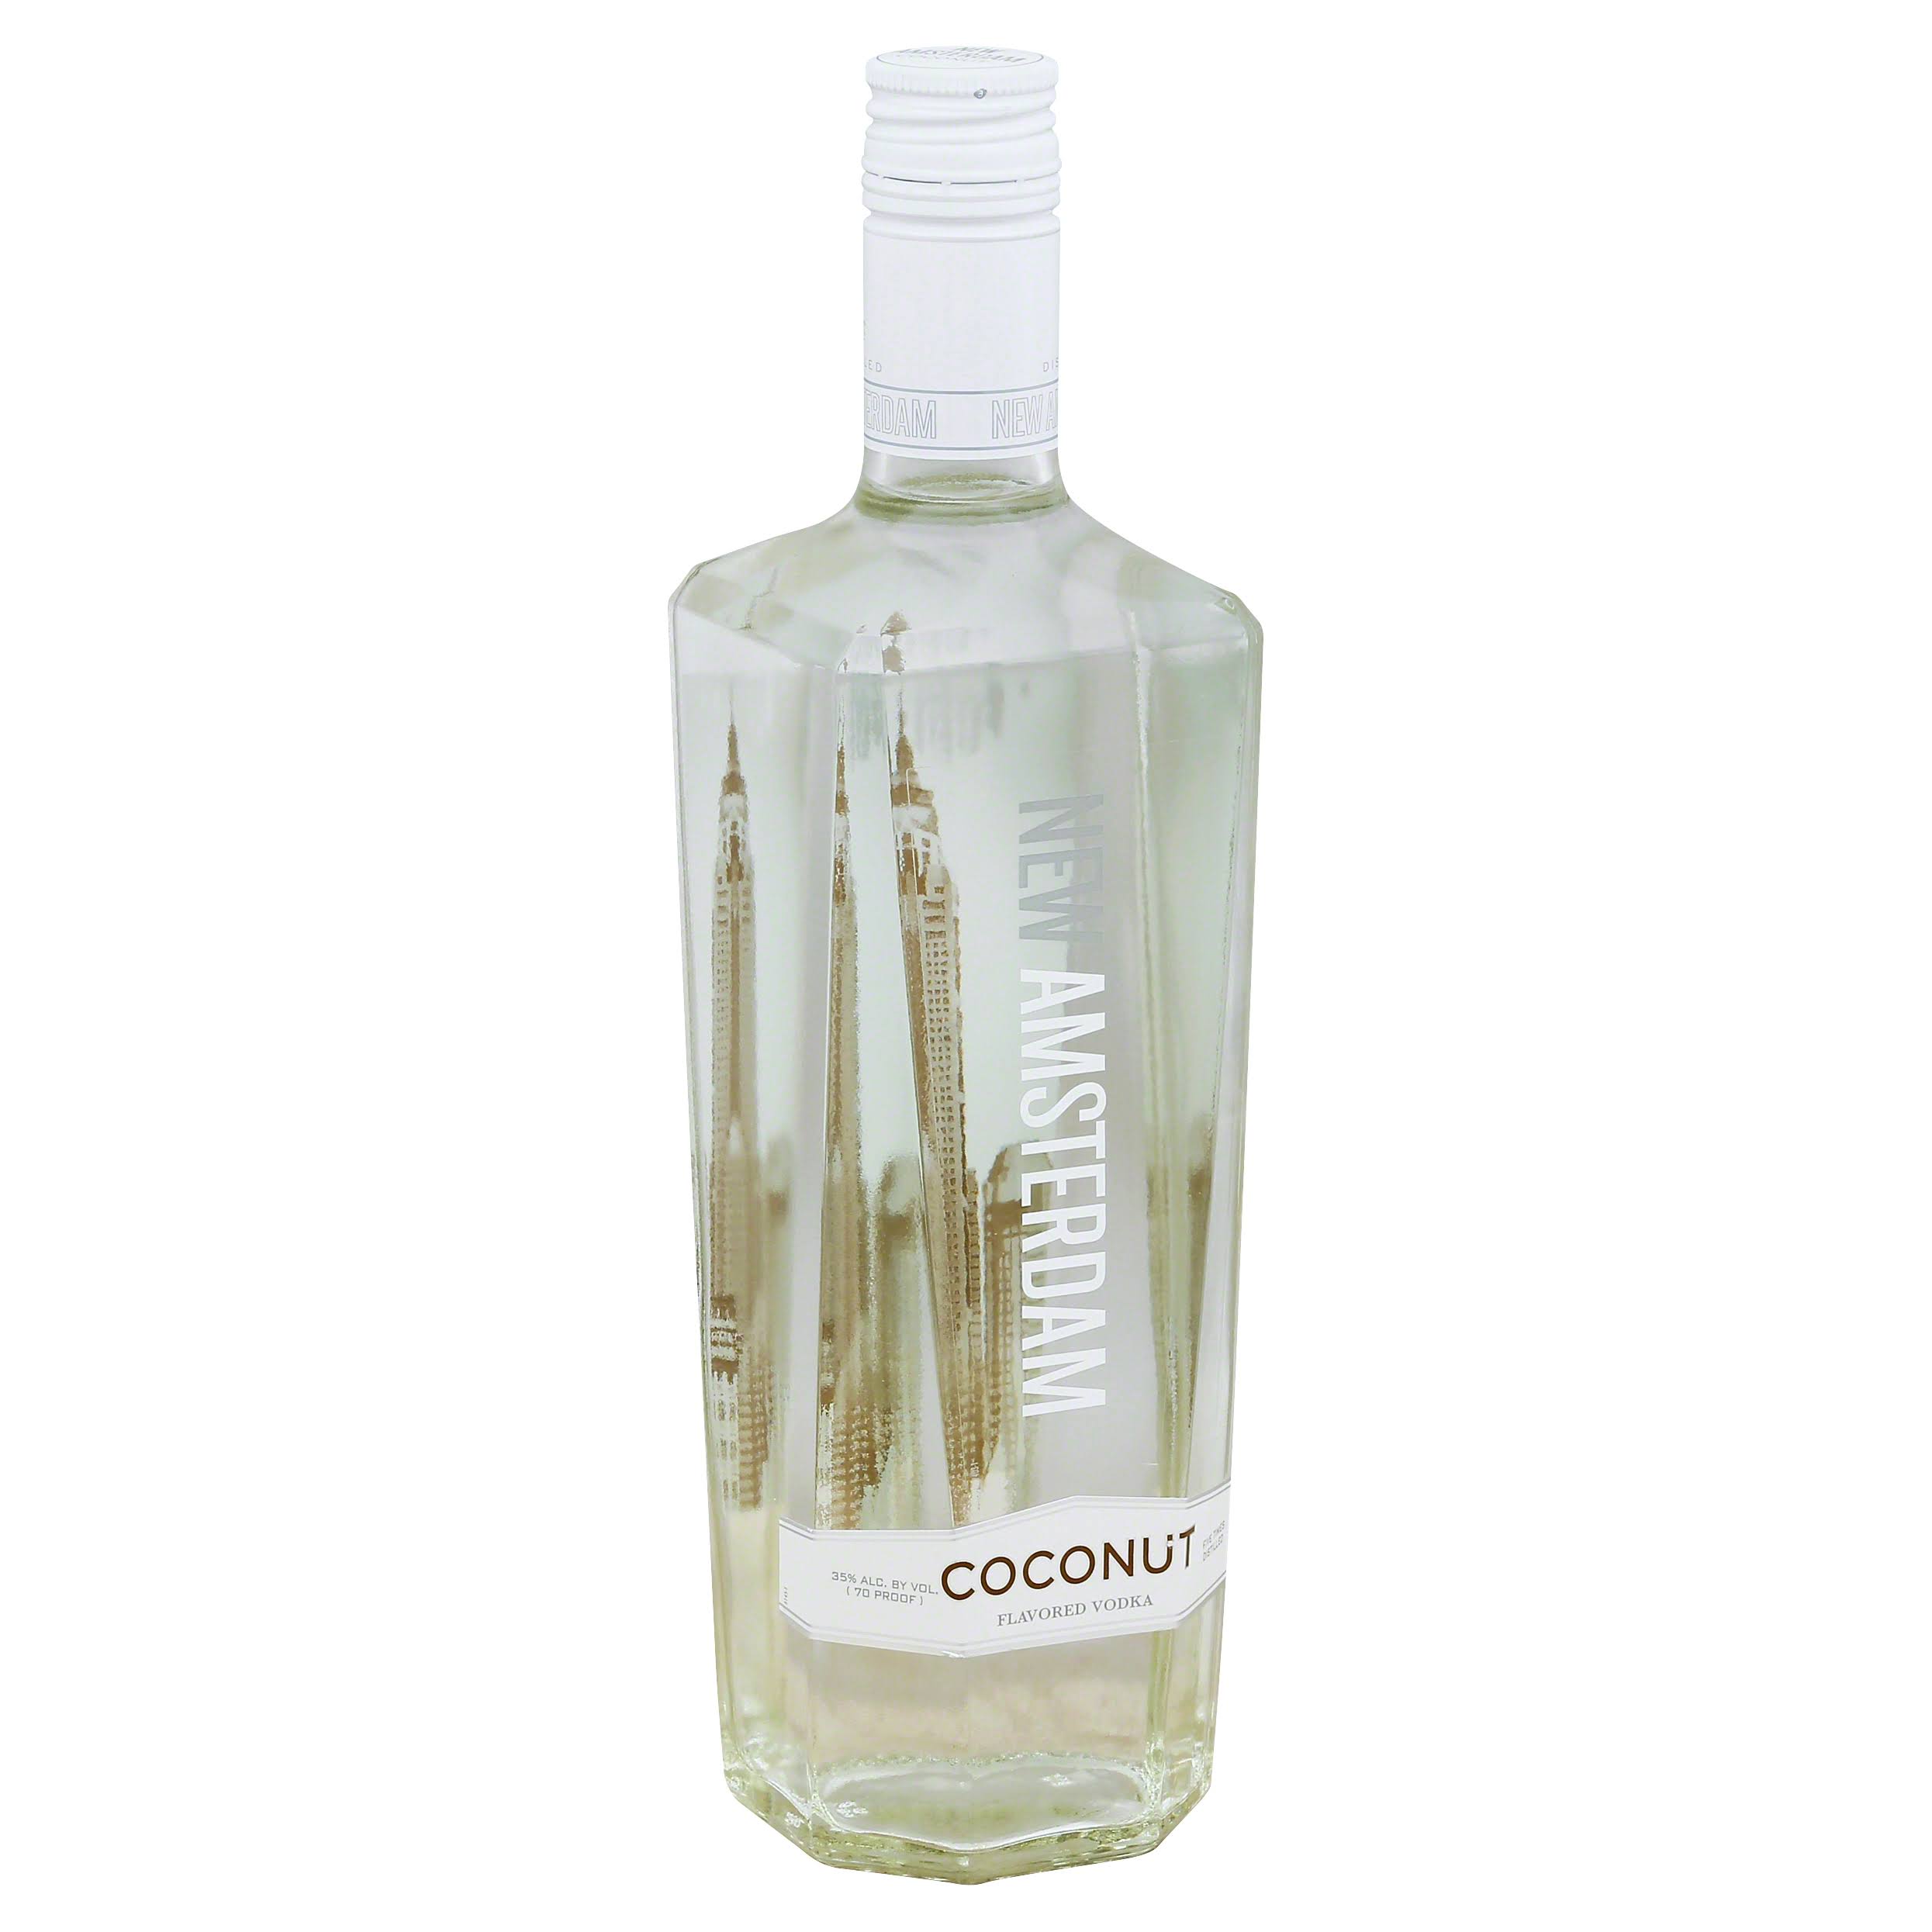 New Amsterdam Vodka, Coconut Flavored - 750 ml